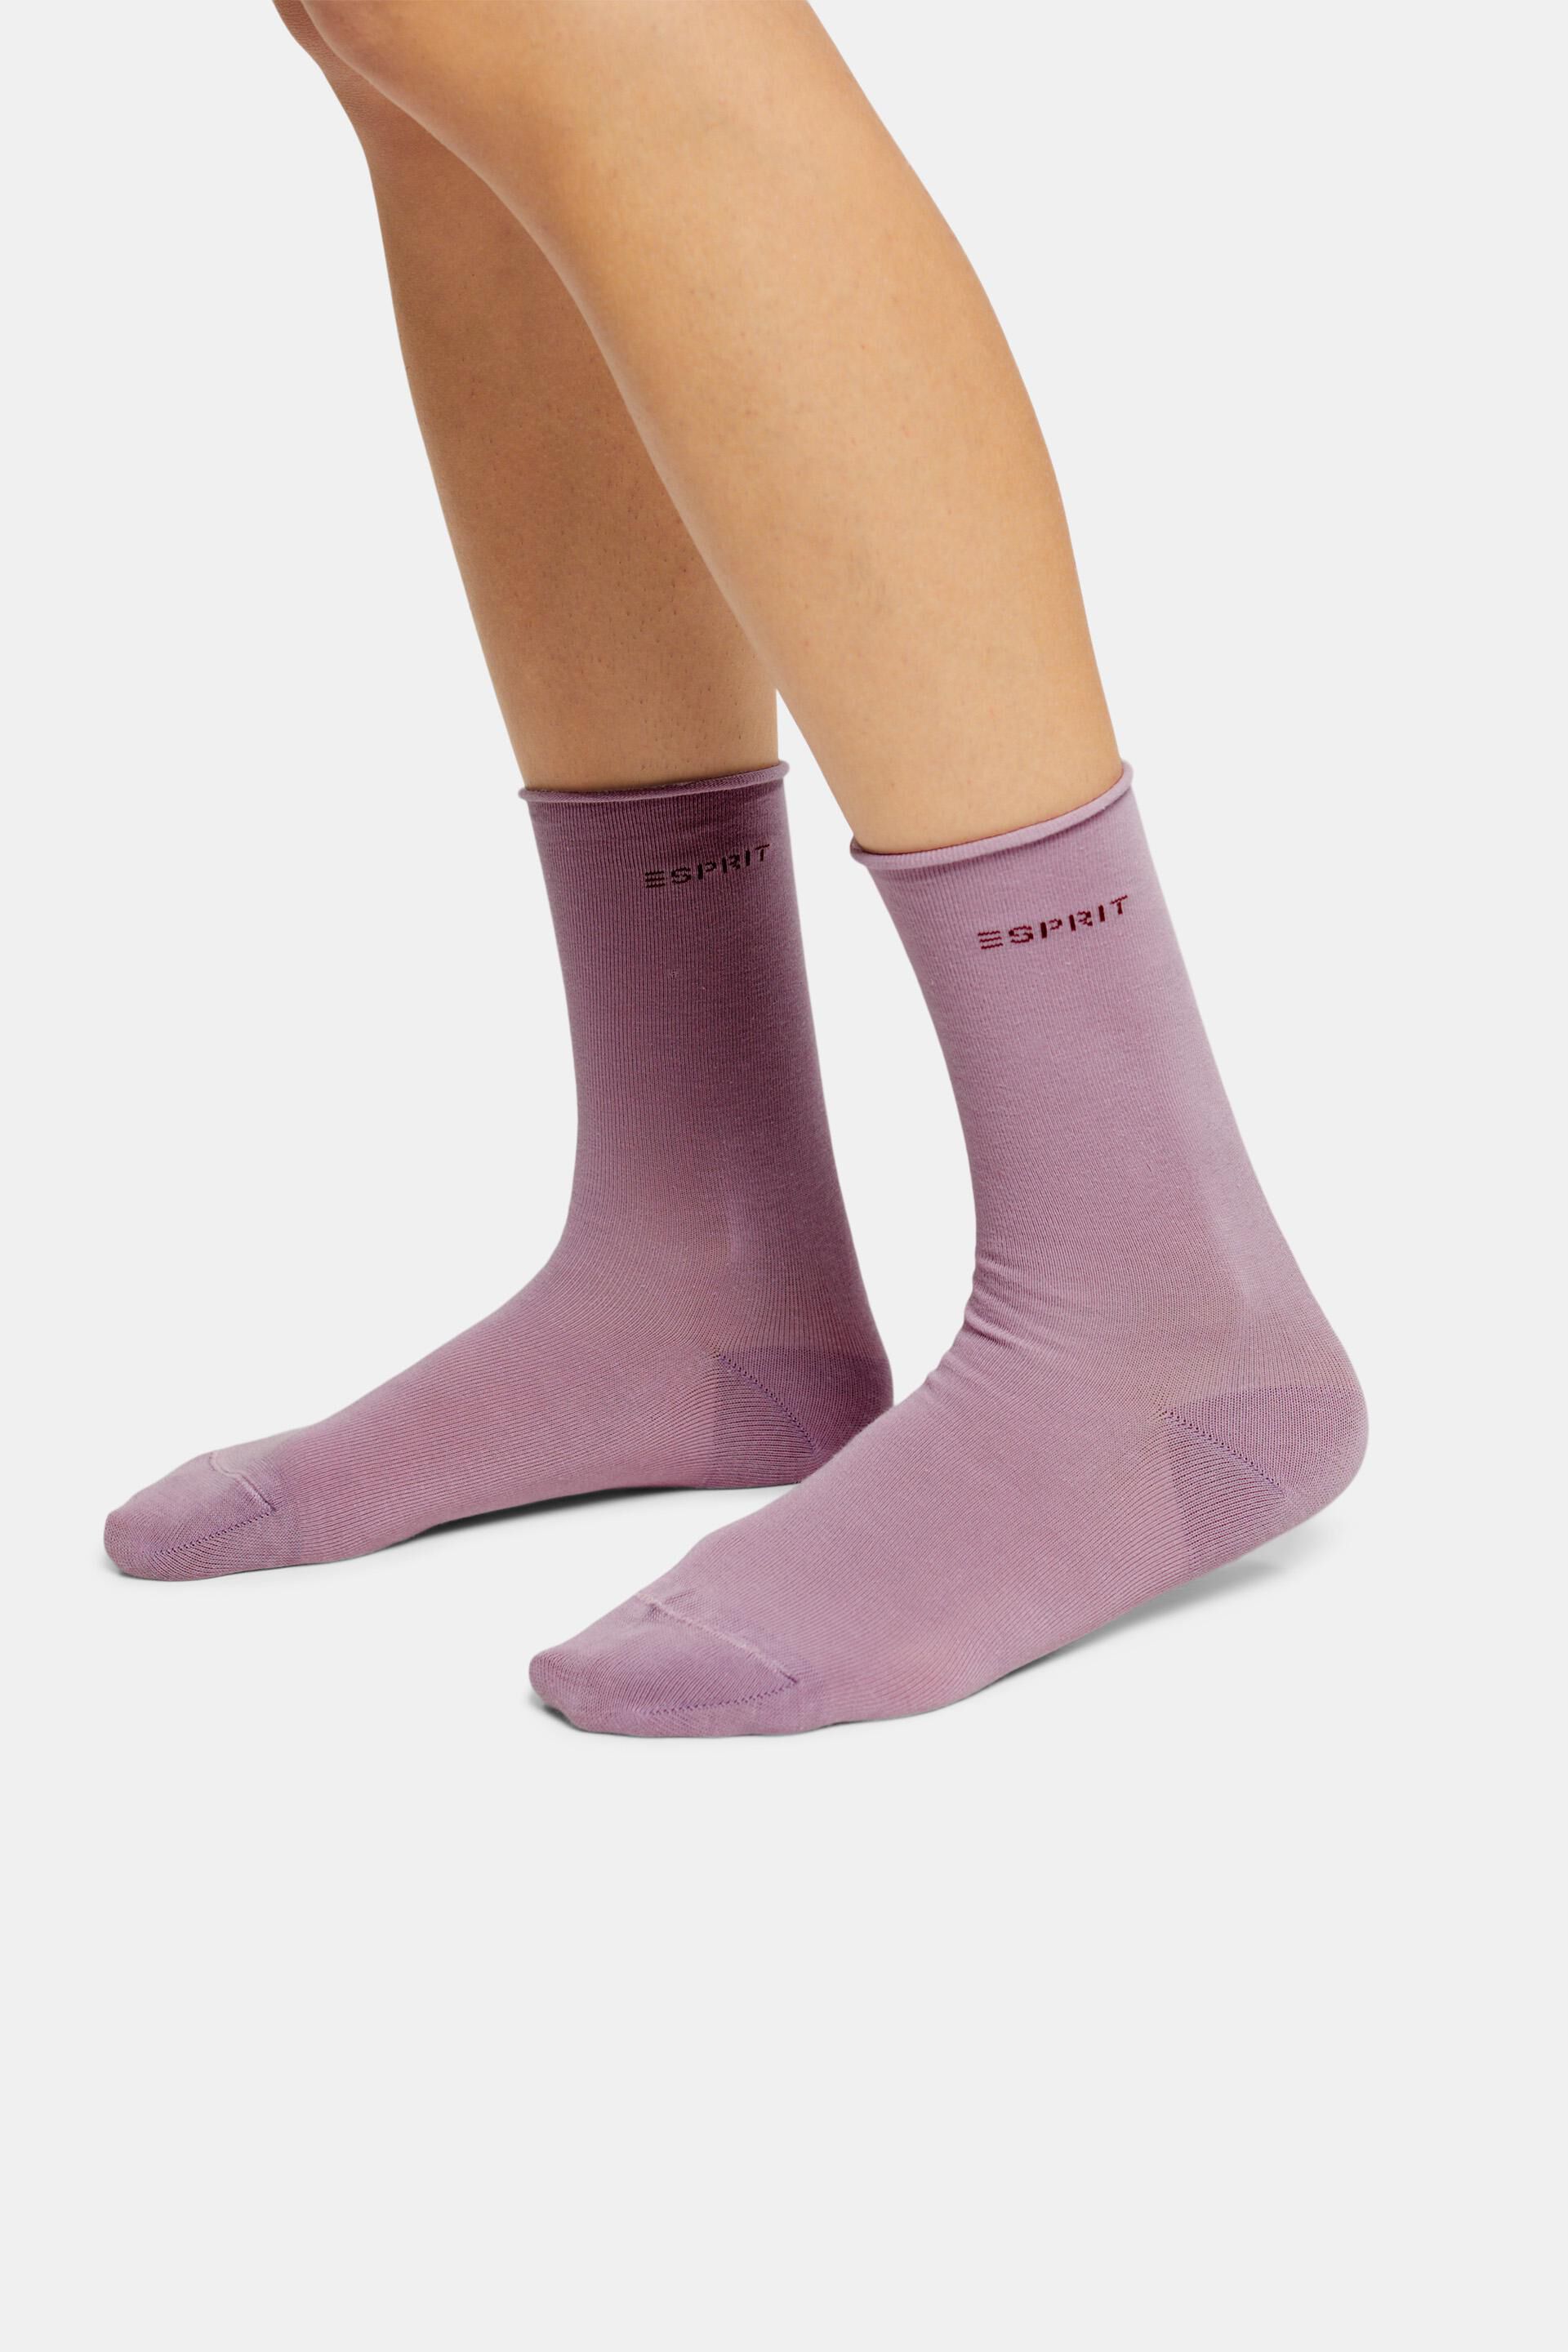 Esprit Bio-Baumwolle Socken 2er-Pack Rollkanten, mit